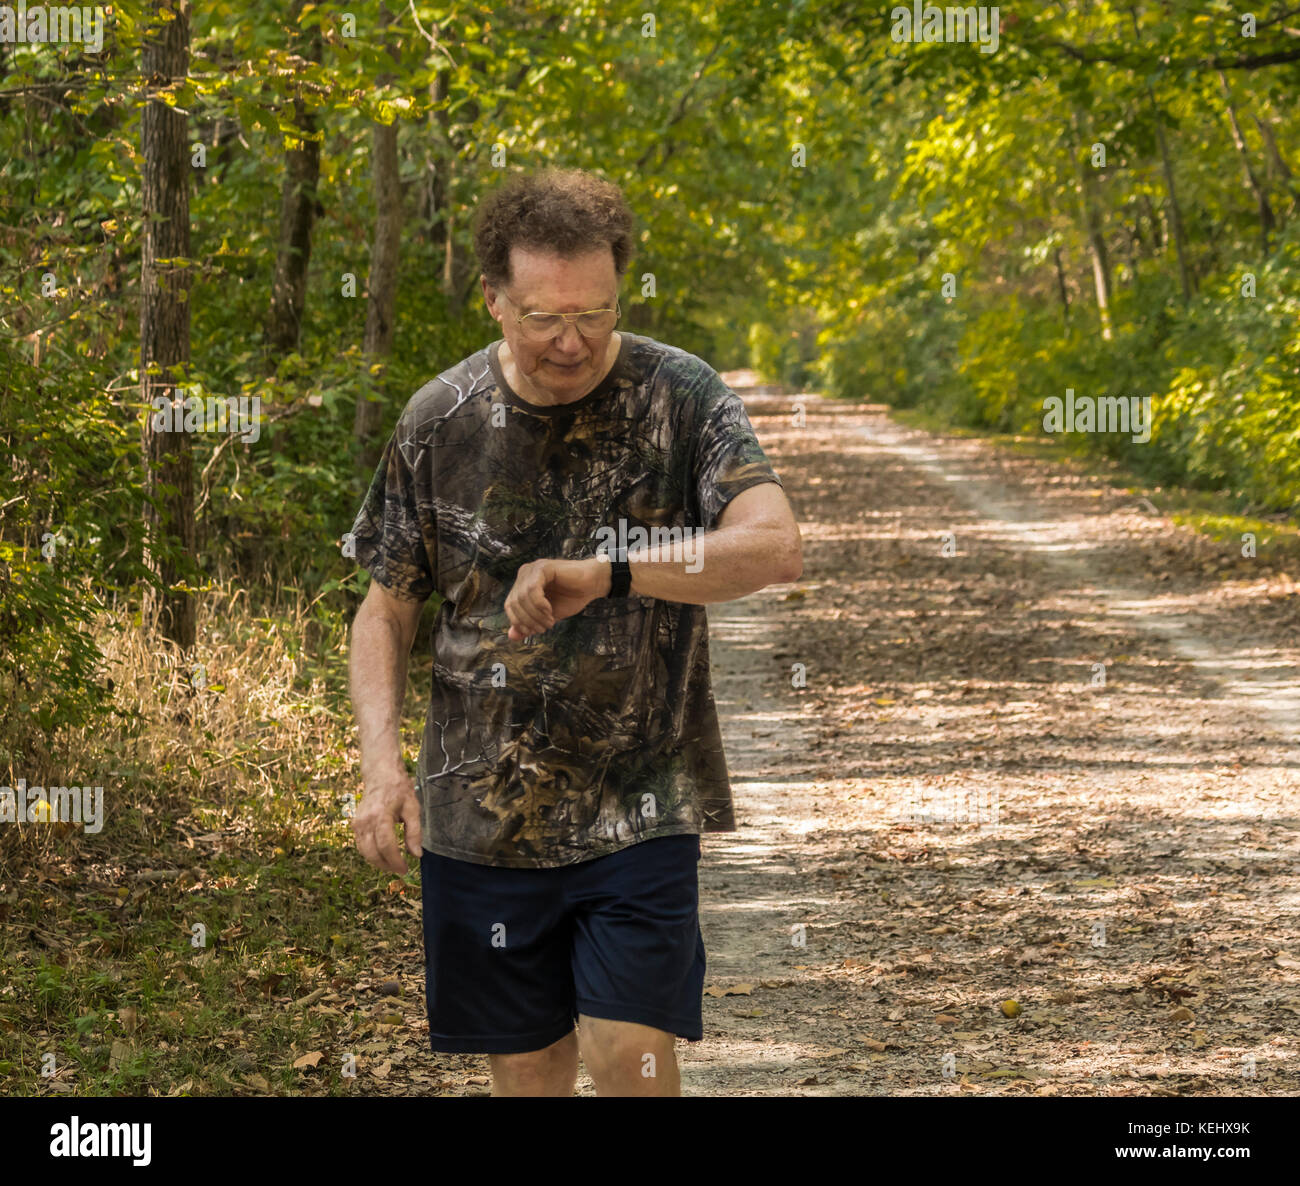 Uomo anziano jogging sul sentiero mentre guardando al suo esercizio bocconcino; gli alberi su entrambi i lati Foto Stock